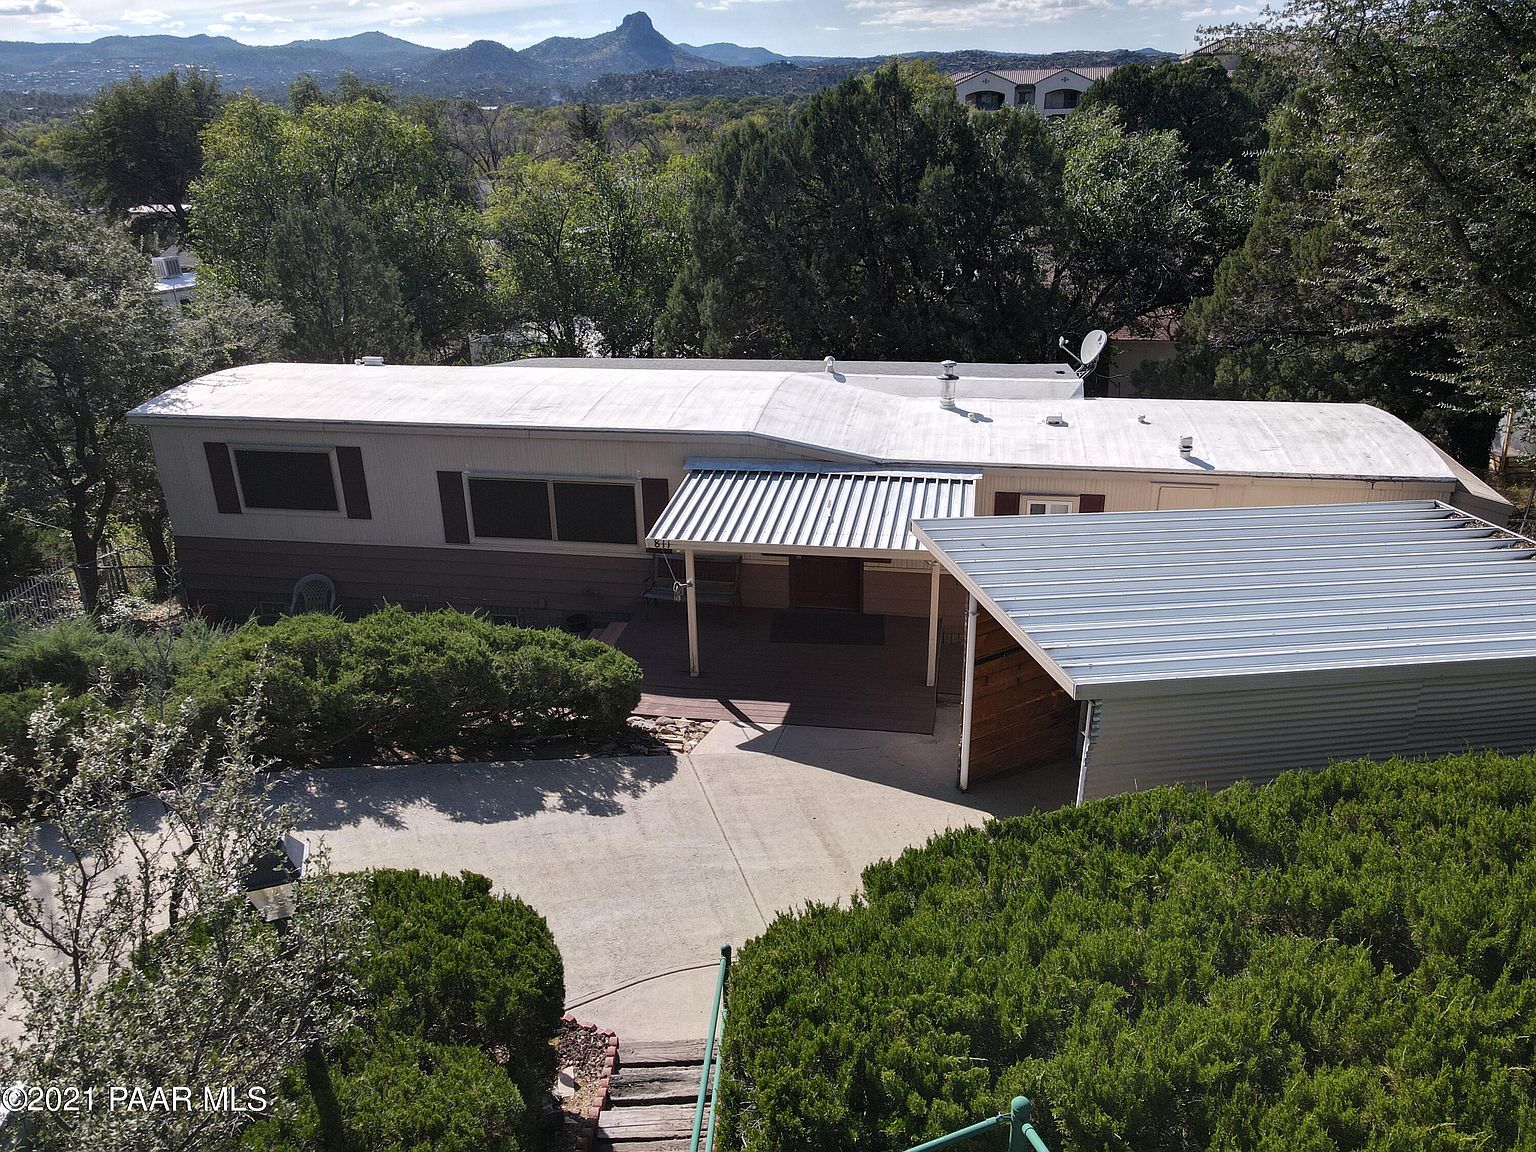 Oak Terrace Real Estate - homes, and Rentals for sale in Oak Terrace,  Prescott, Arizona.